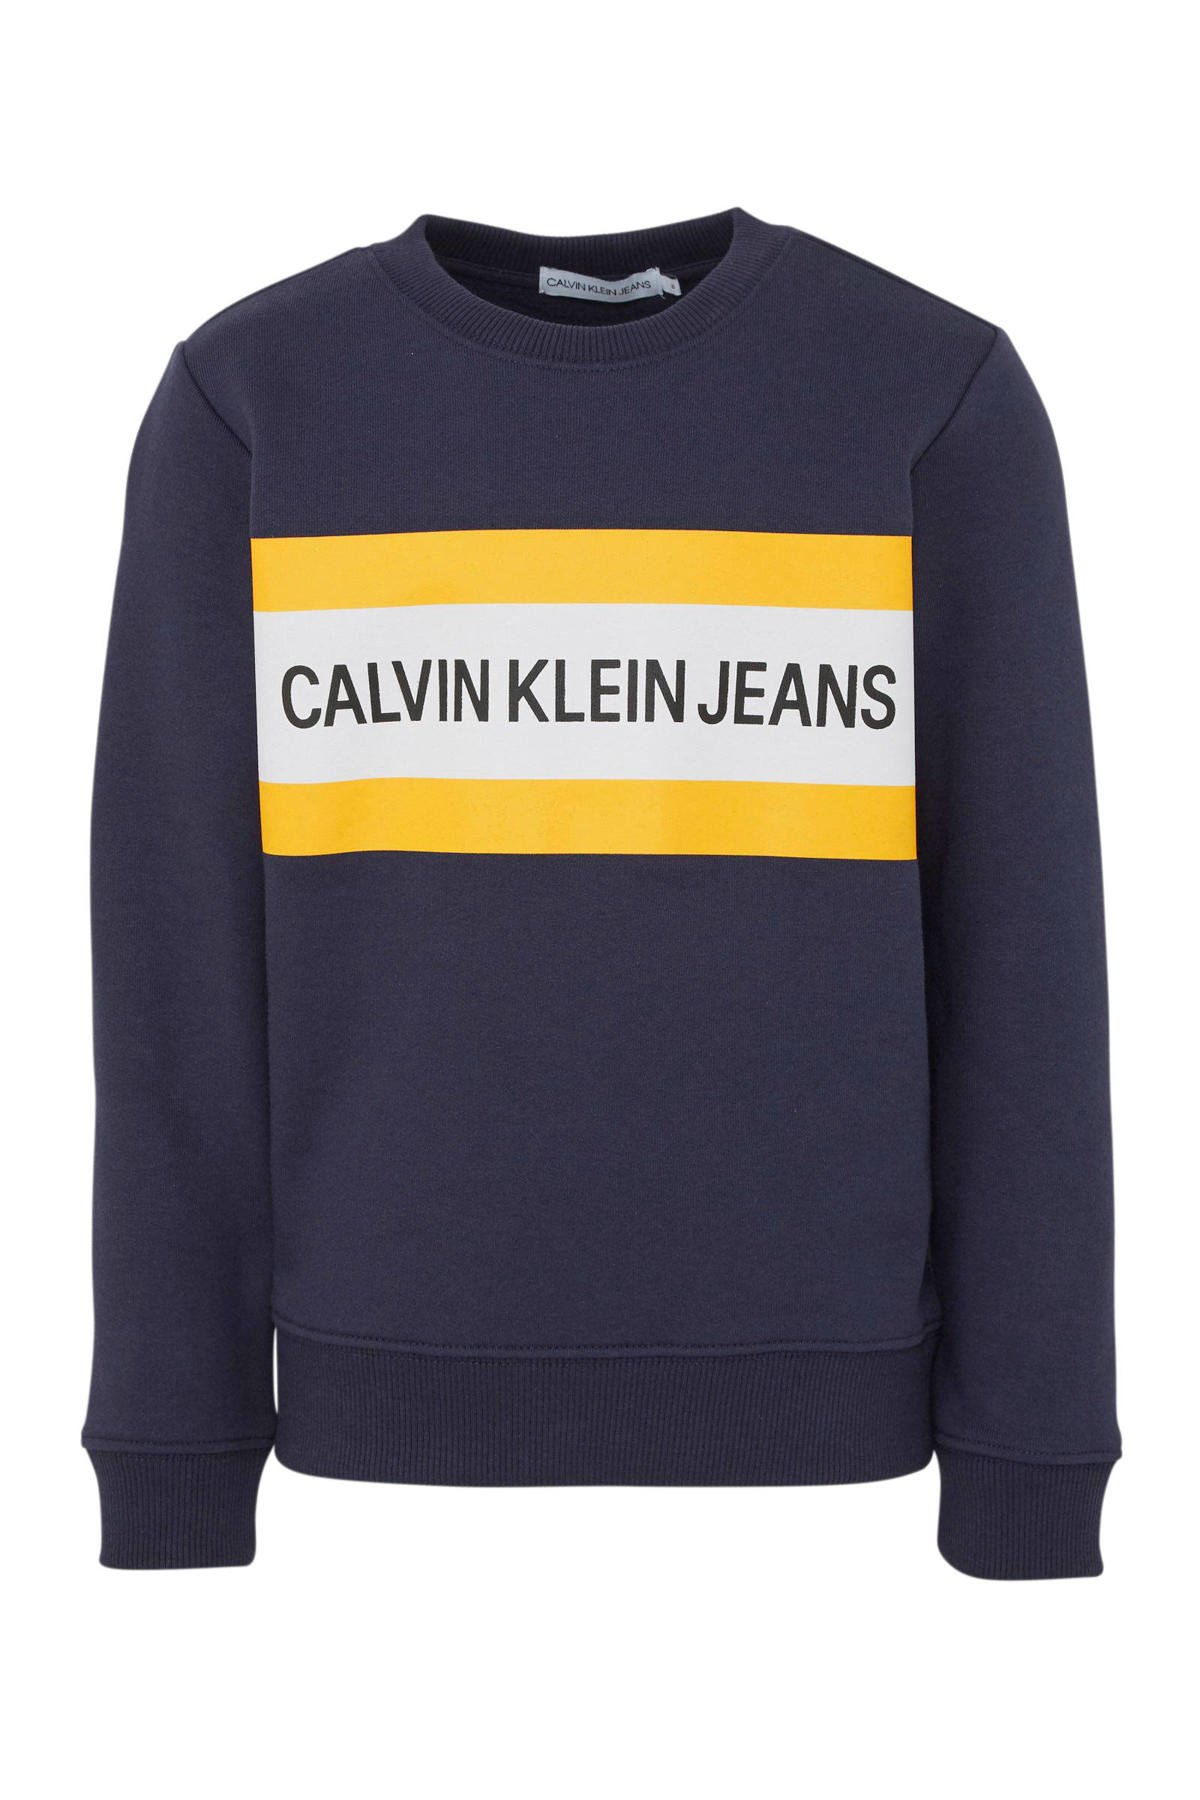 piek Kampioenschap Afdaling CALVIN KLEIN JEANS sweater met logo donkerblauw/wit/geel | wehkamp